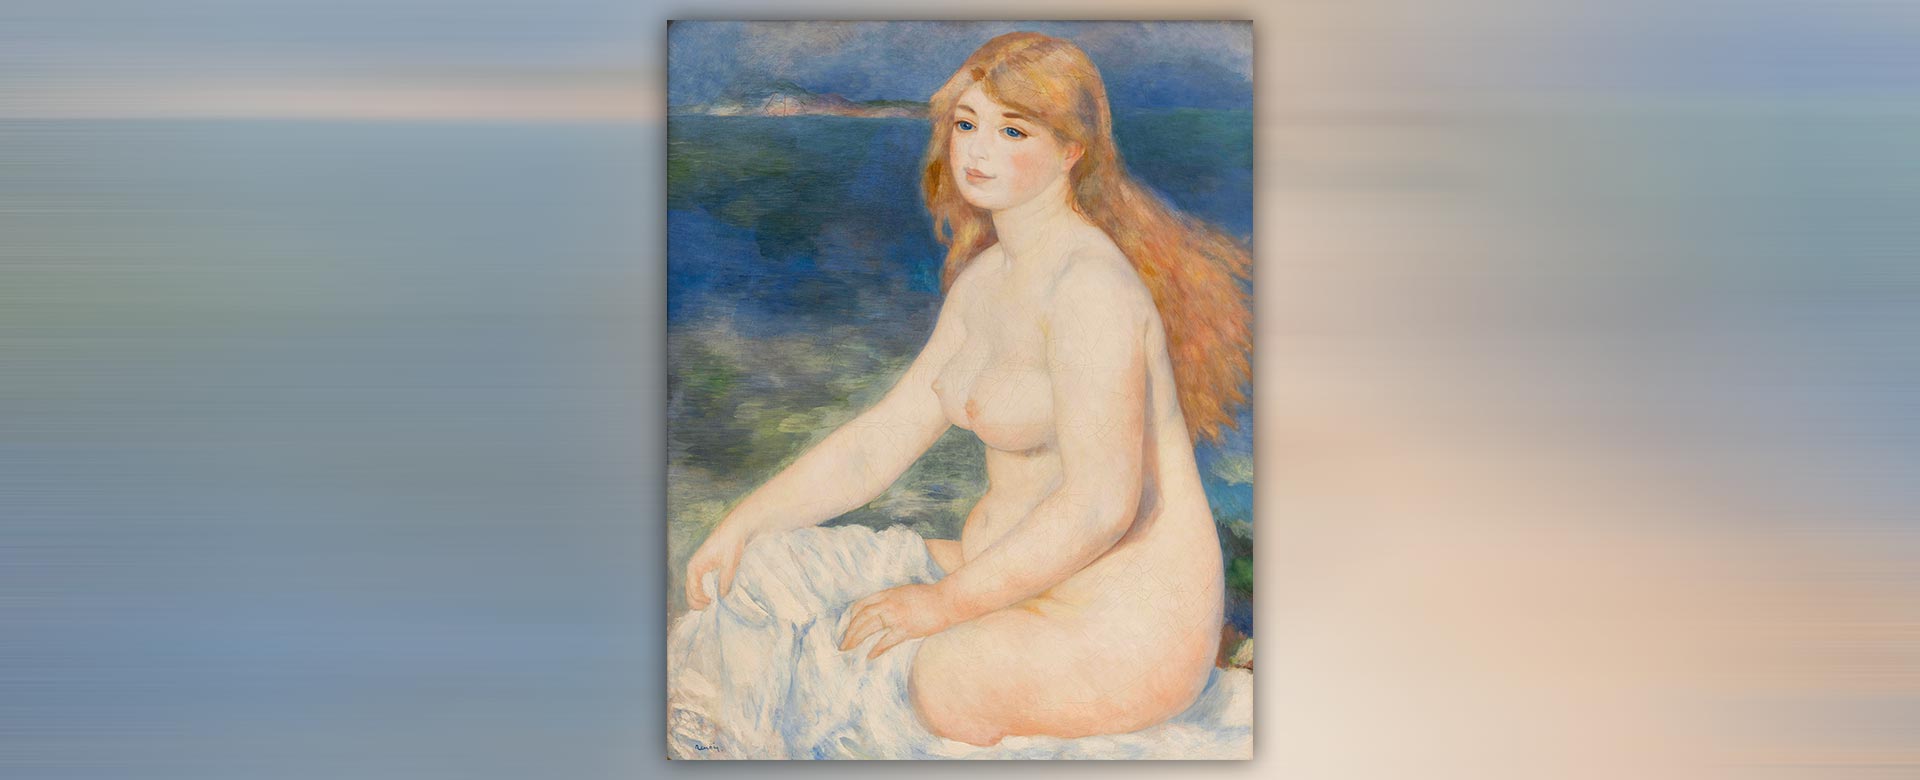 Foto: In apertura La Baigneuse blonde (1882) di Pierre-Auguste Renoir. Pinacoteca Agnelli, Torino